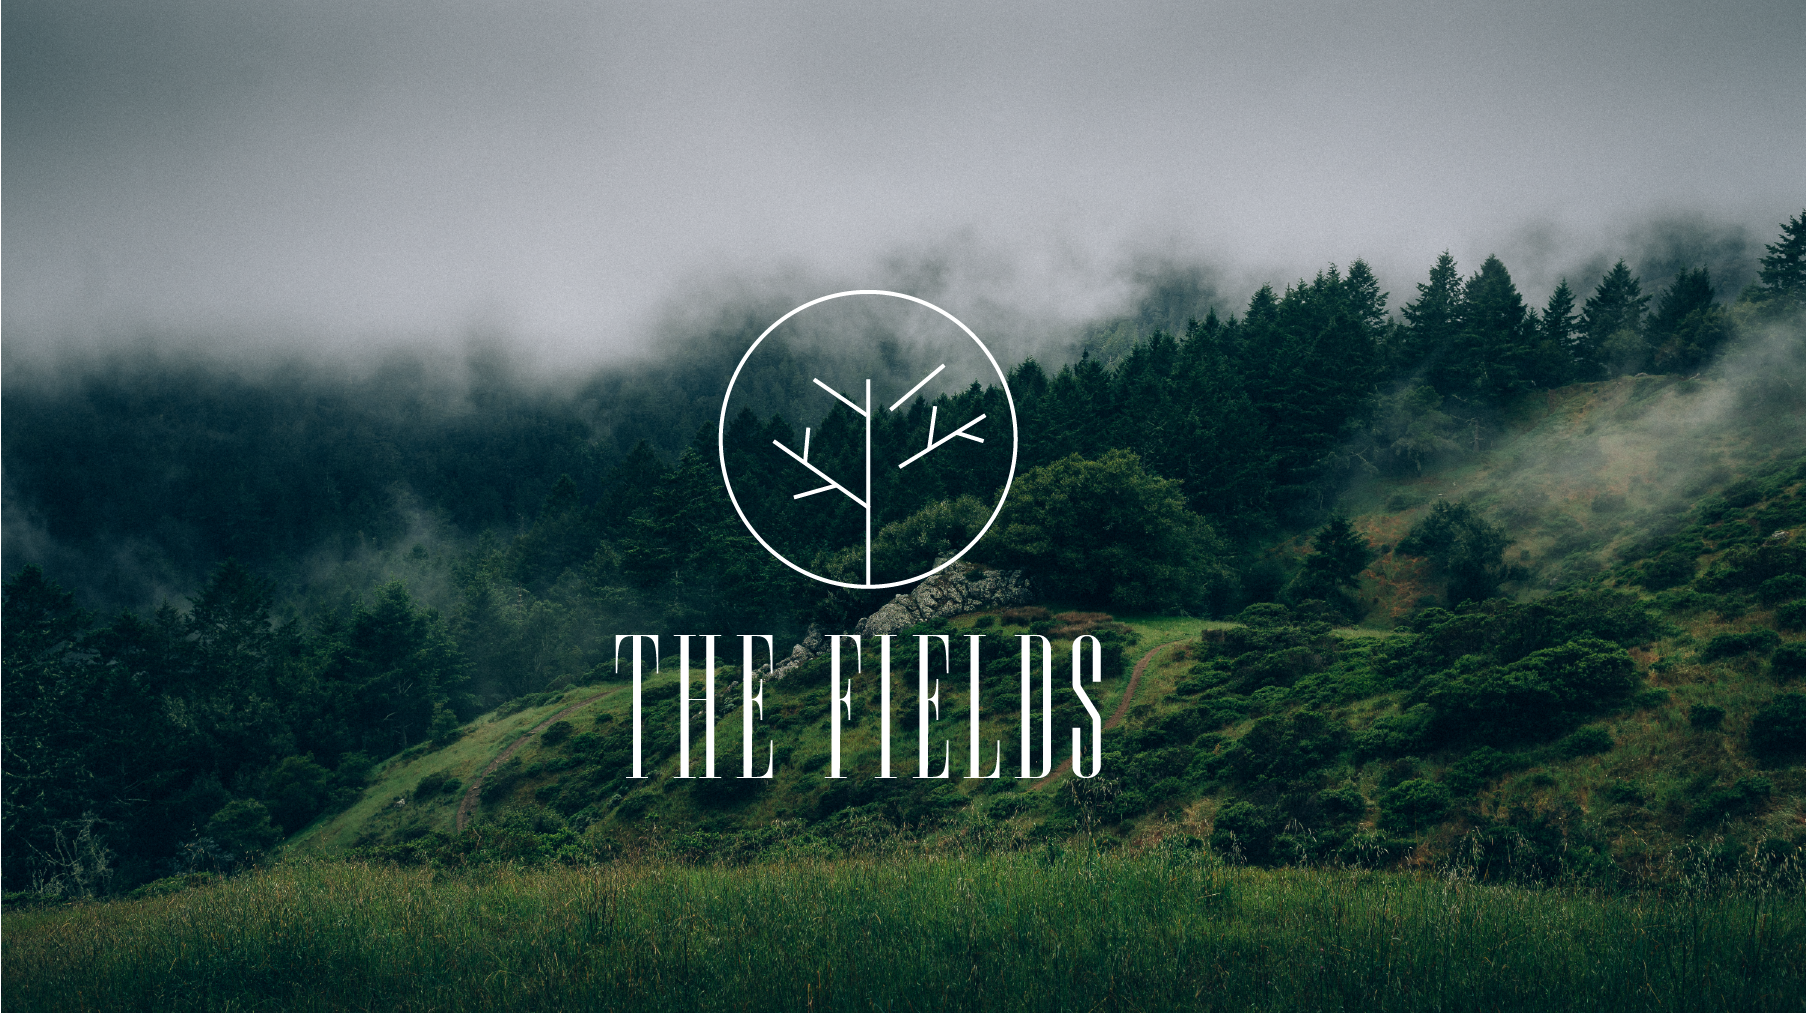 The Fields